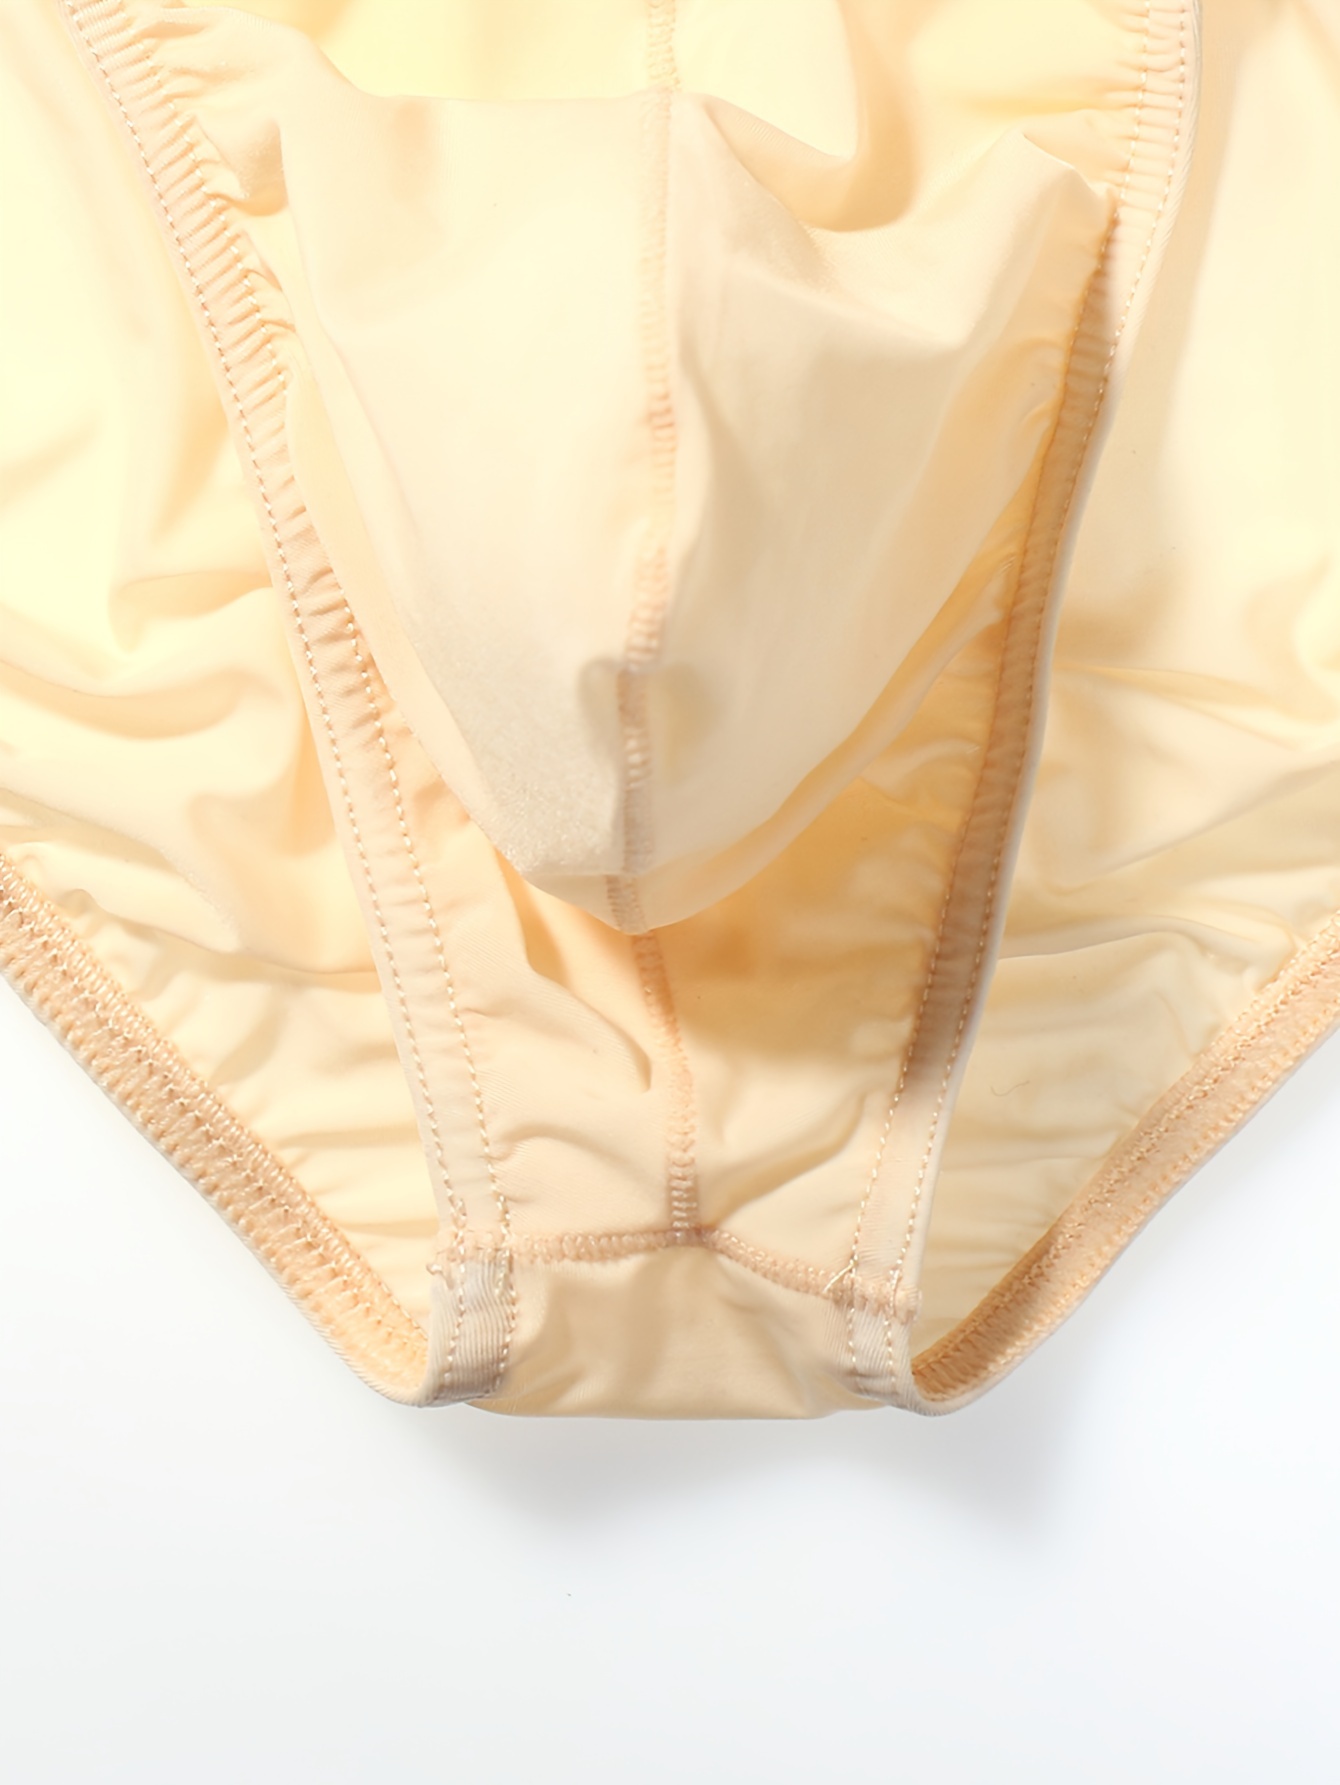 Bras Summer Ultra Thin Ice Silk Seamless Underwear Women Without